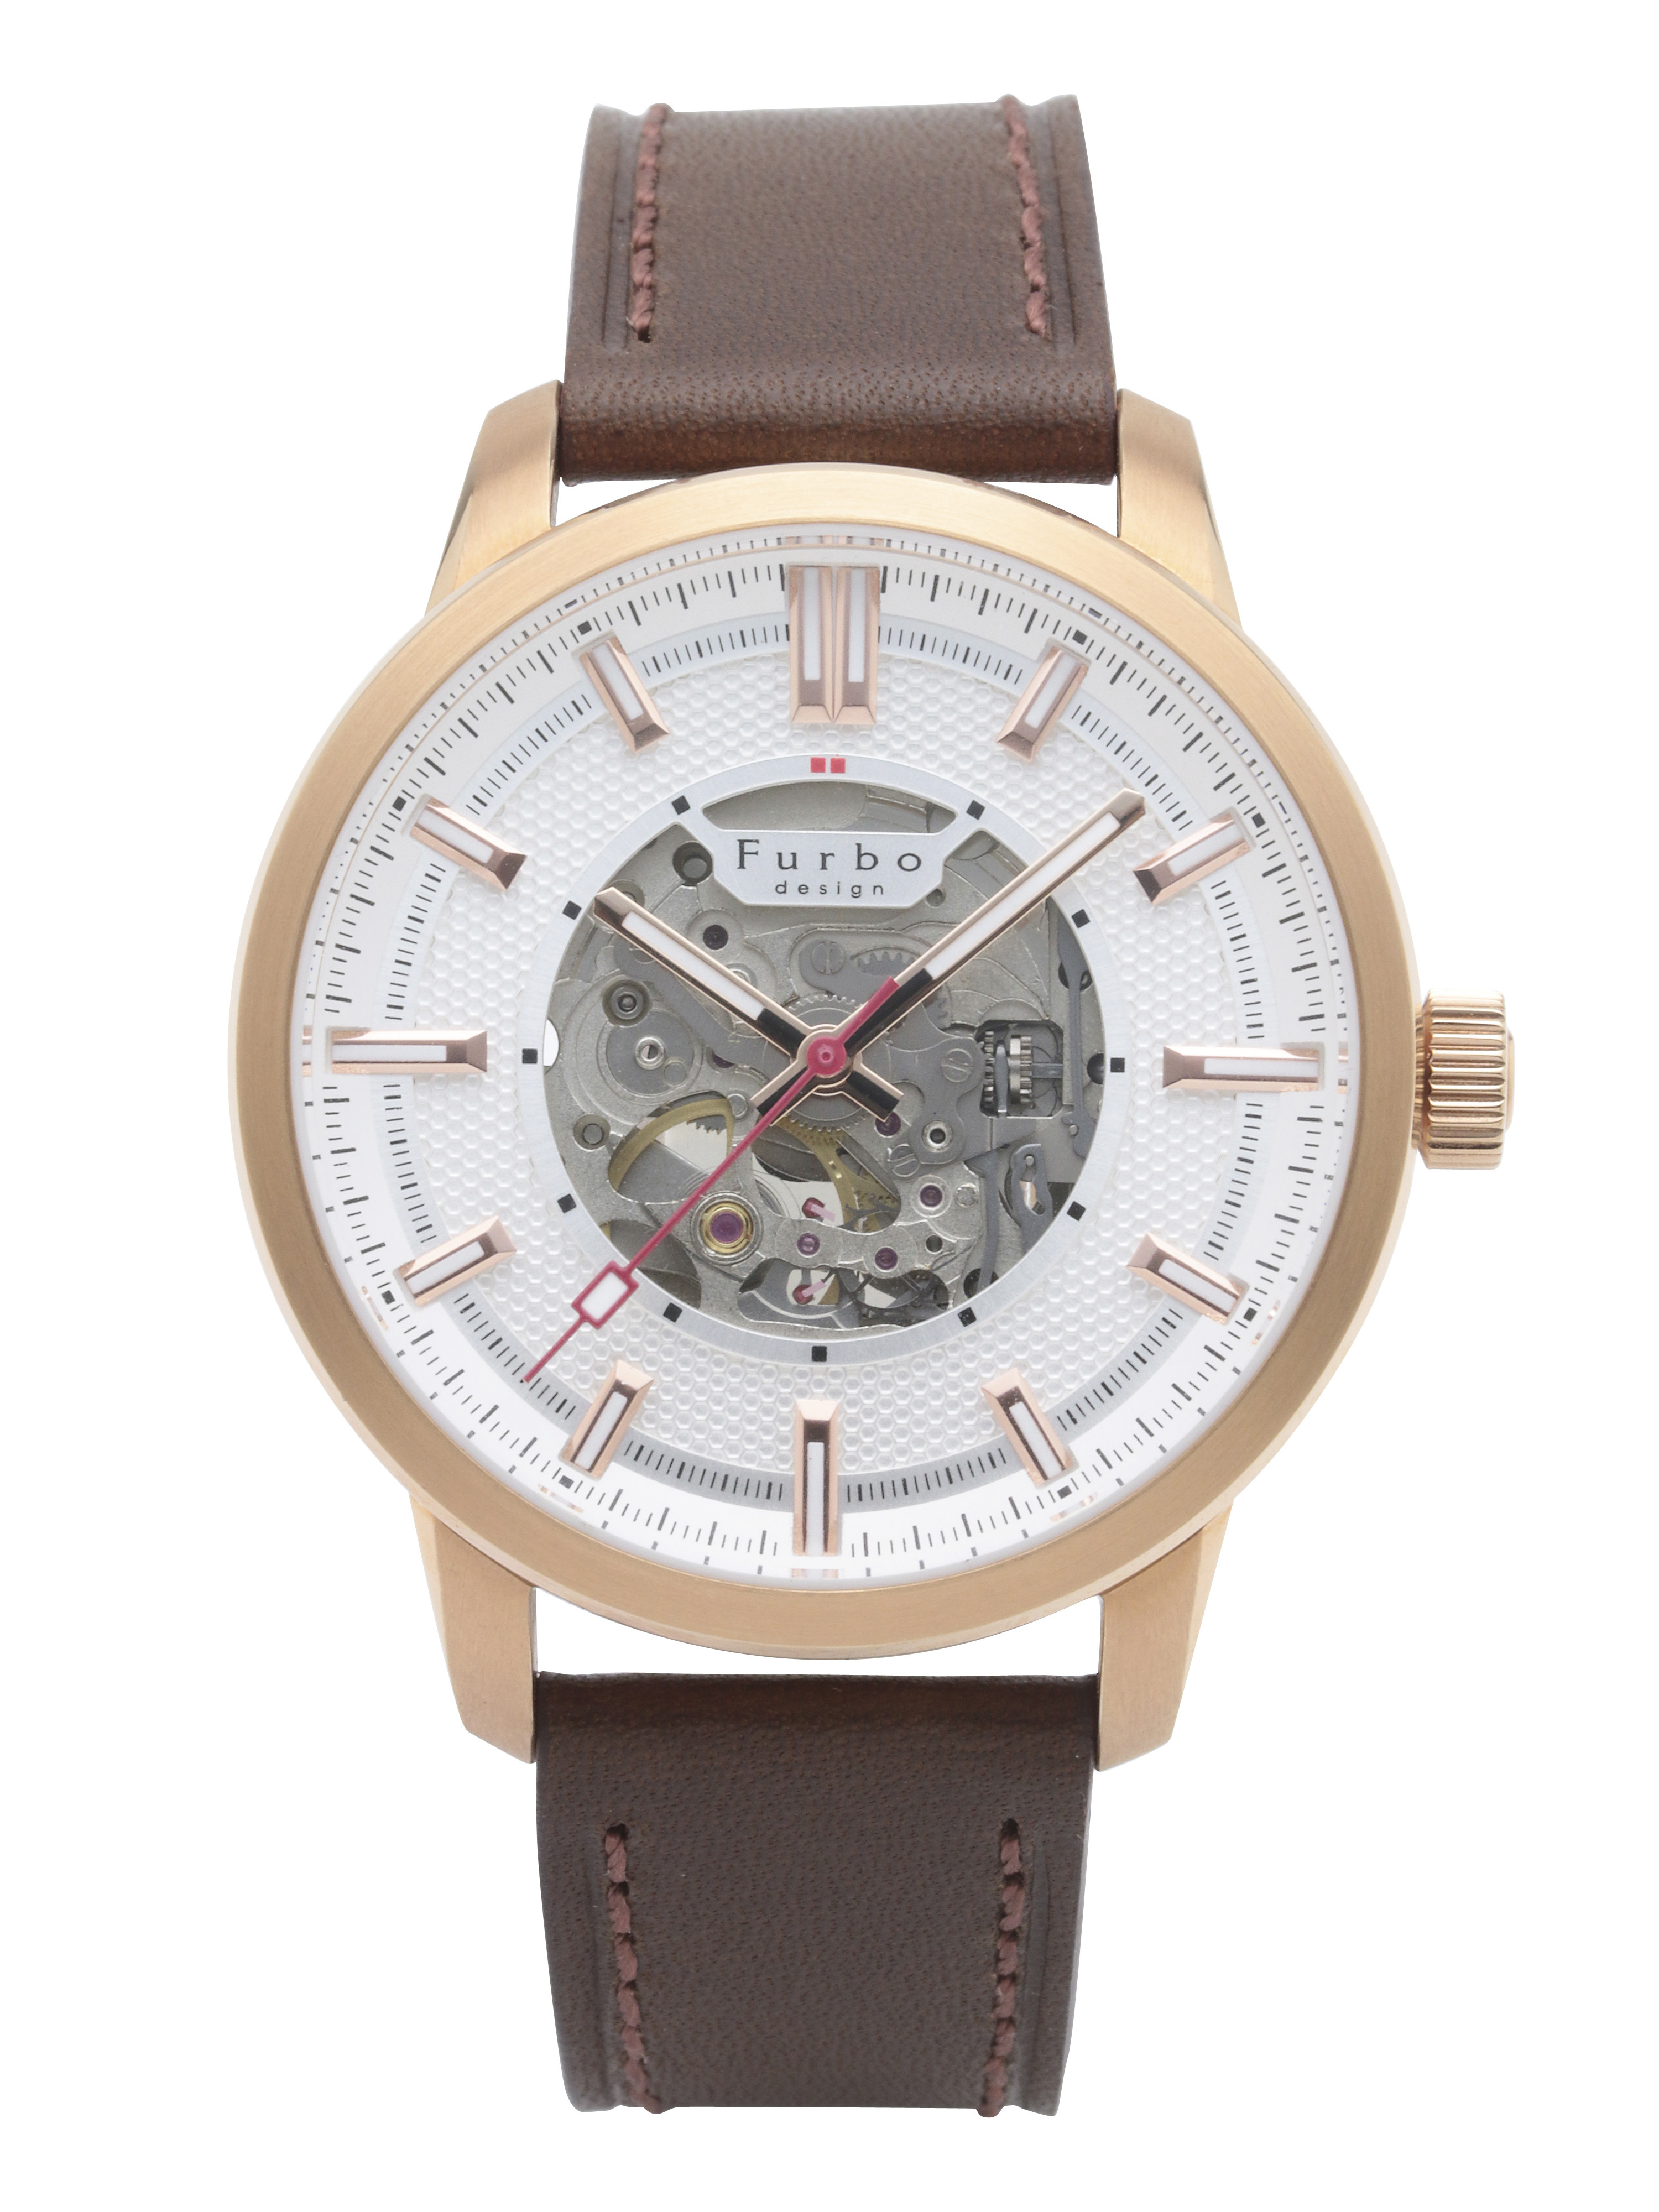 ライフスタイルブランド『フルボデザイン』新作腕時計“ポテンザ”を発売